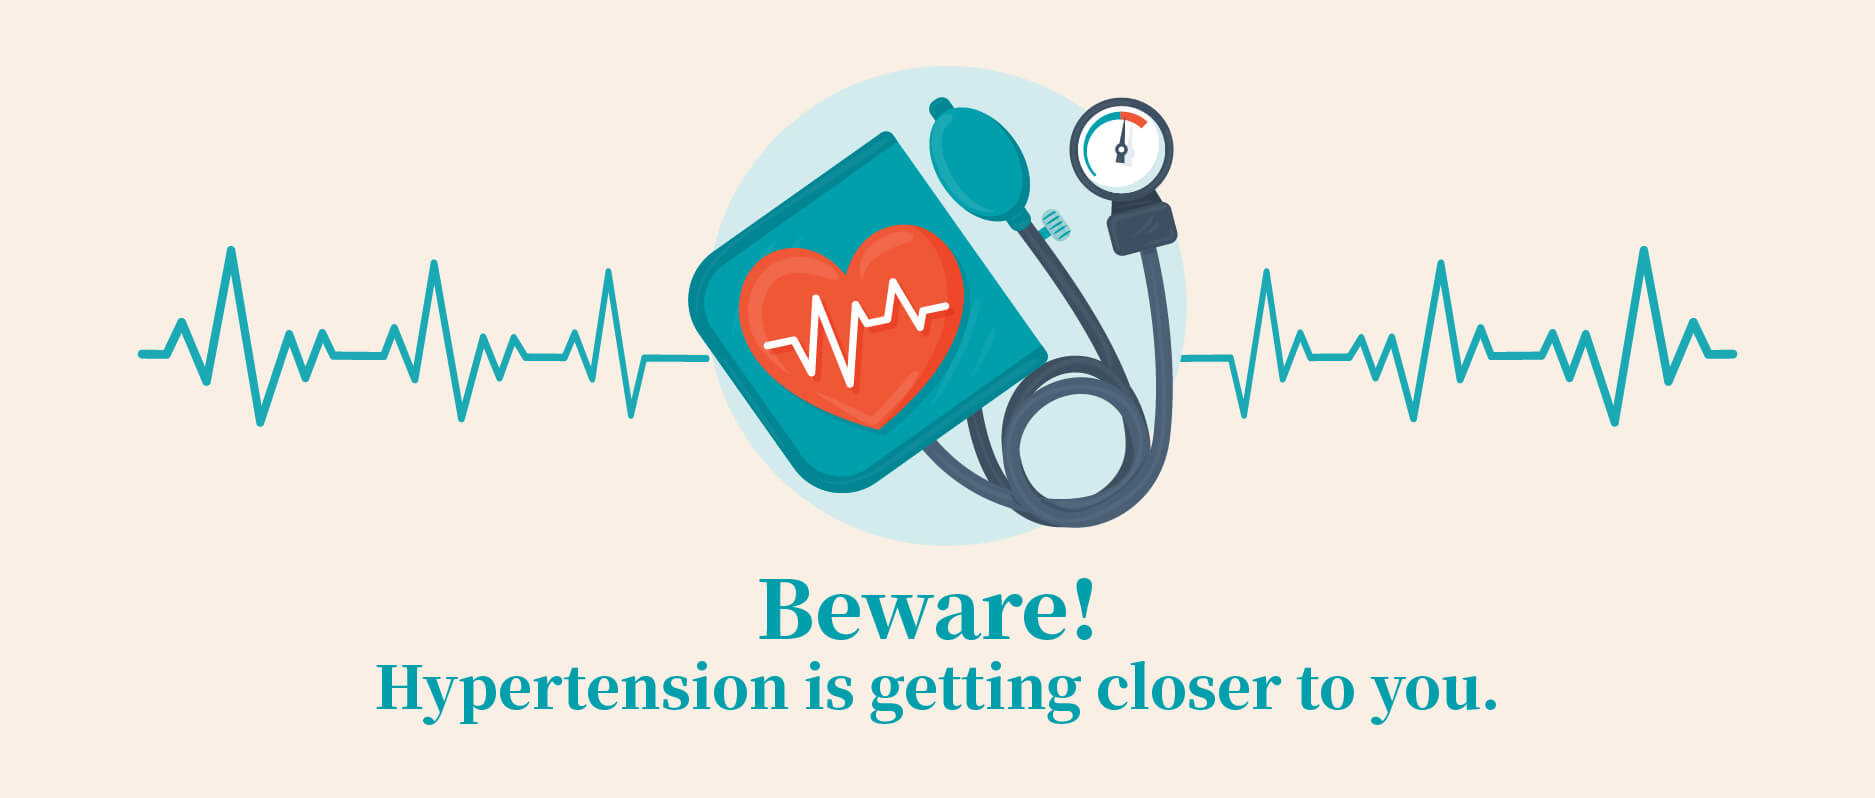 ¡tener cuidado! la hipertensión está cada vez más cerca de ti.
